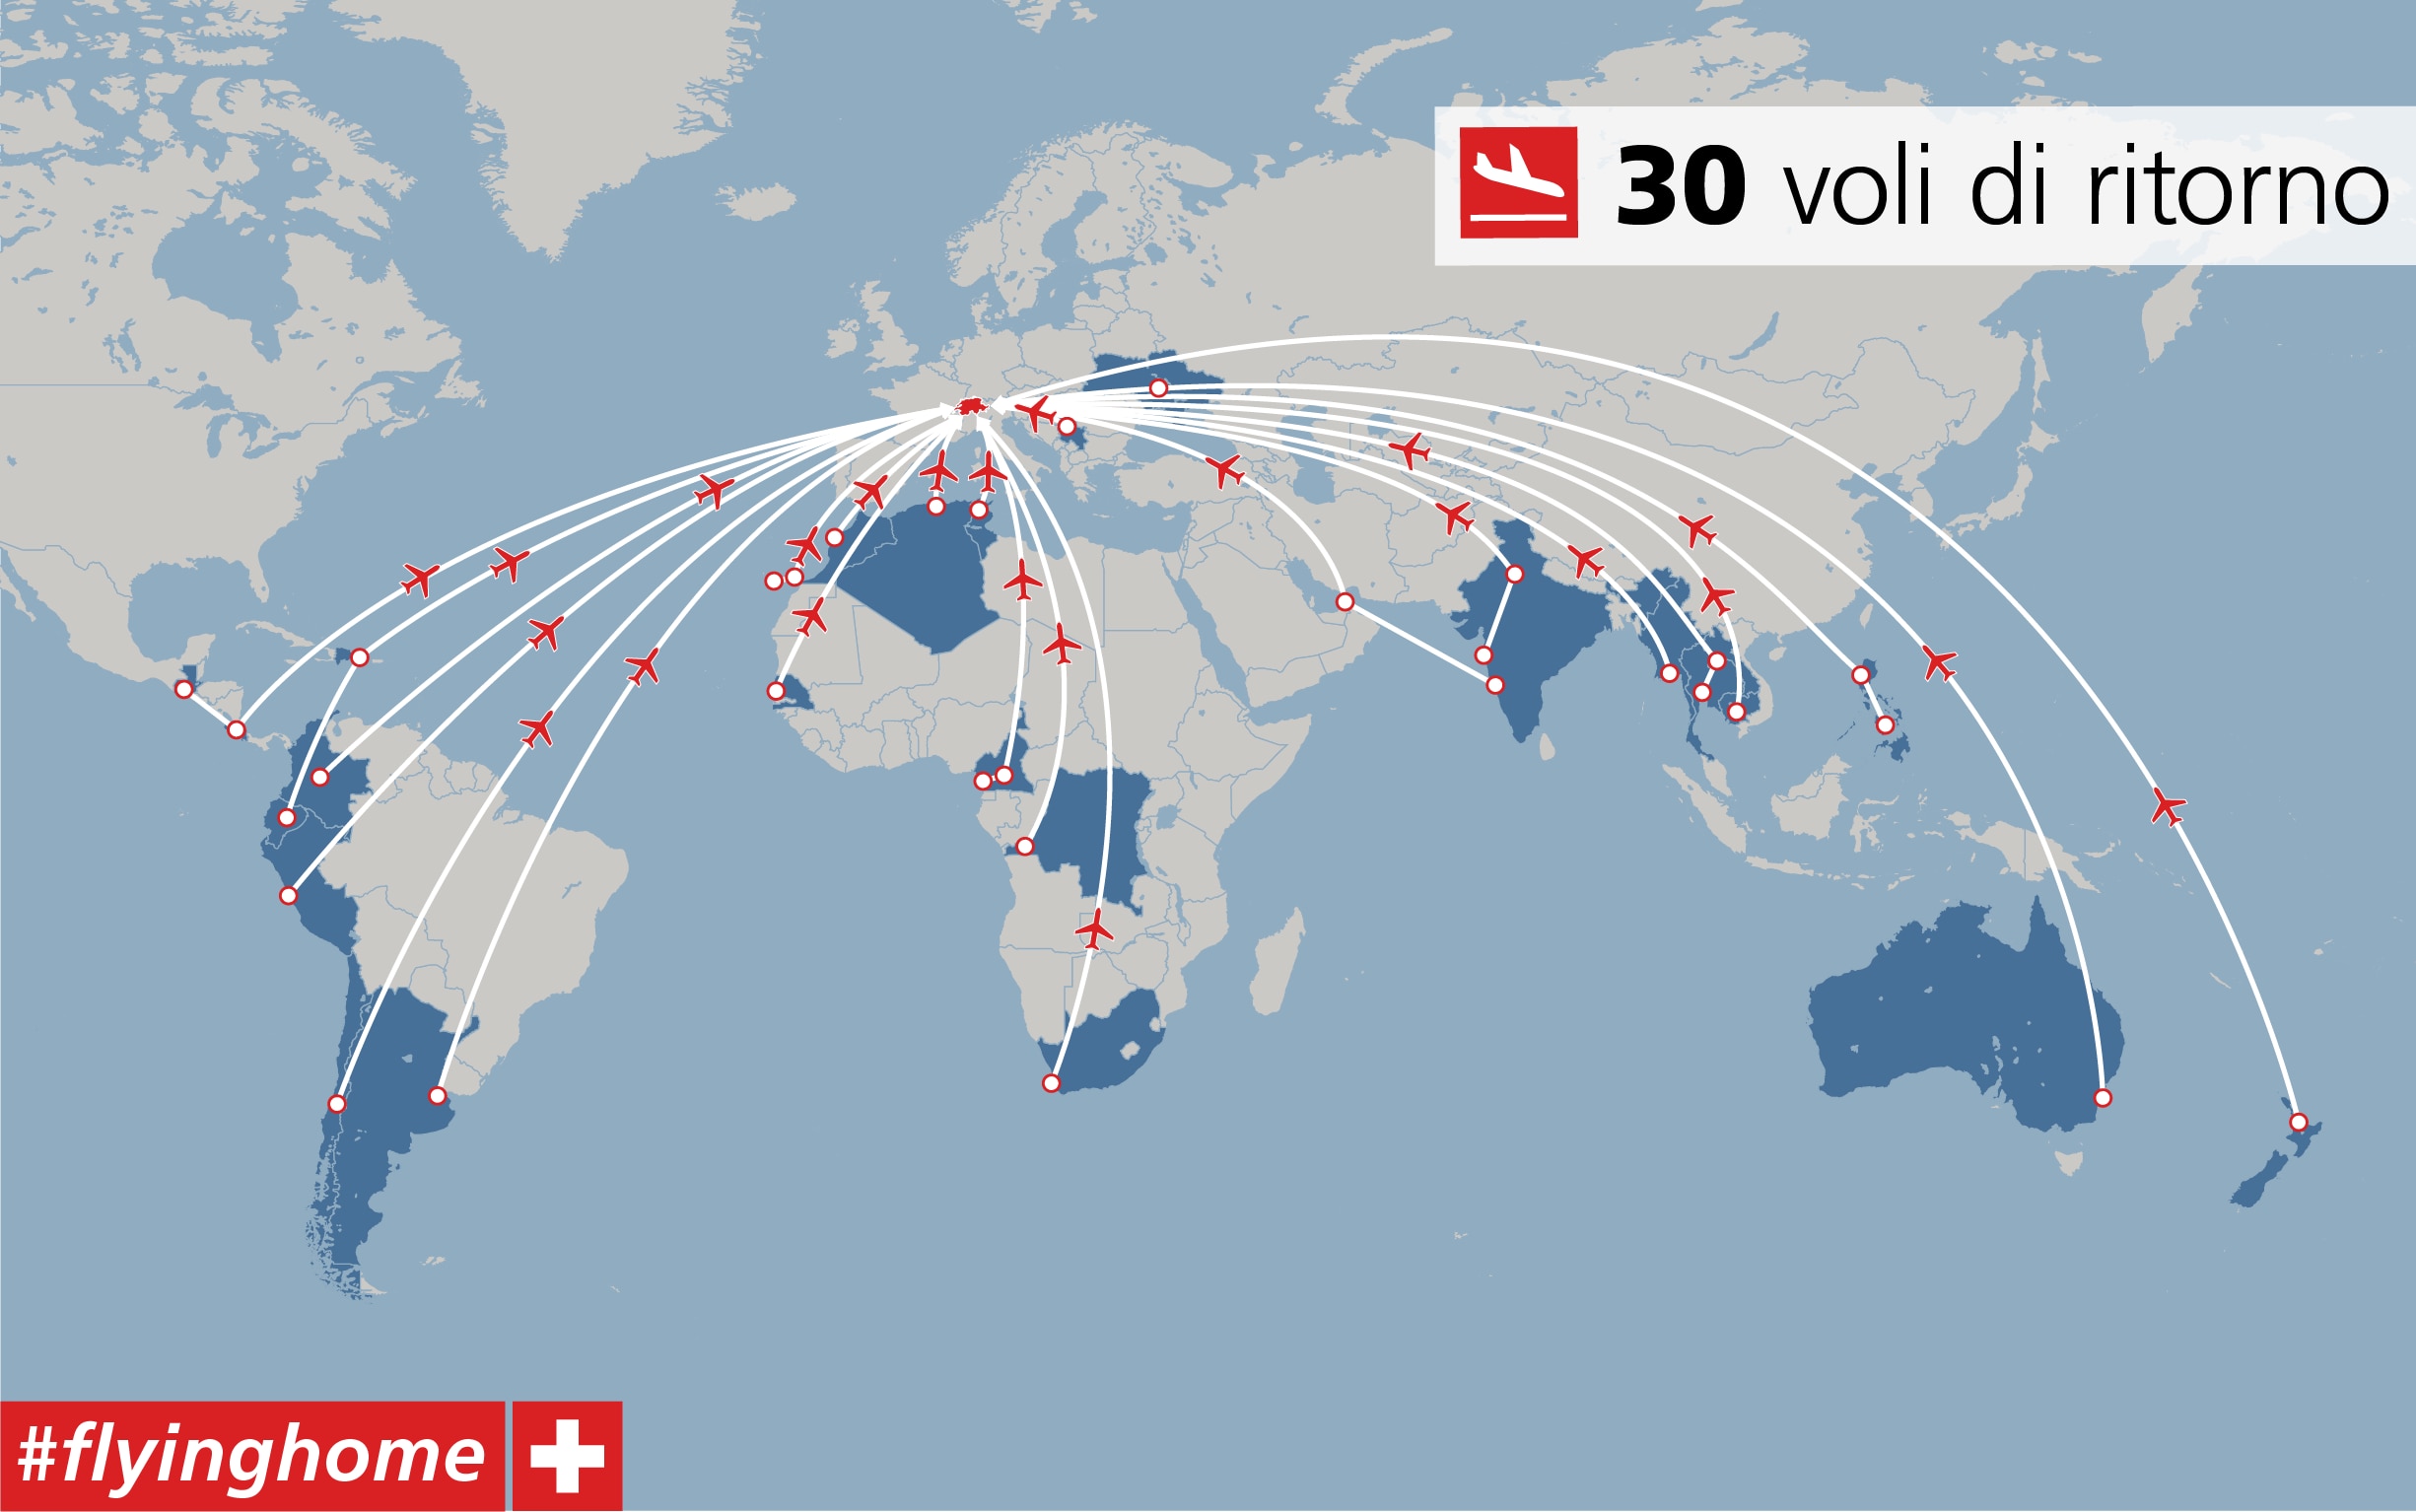 Mappa del mondo con i 30 voli tracciati